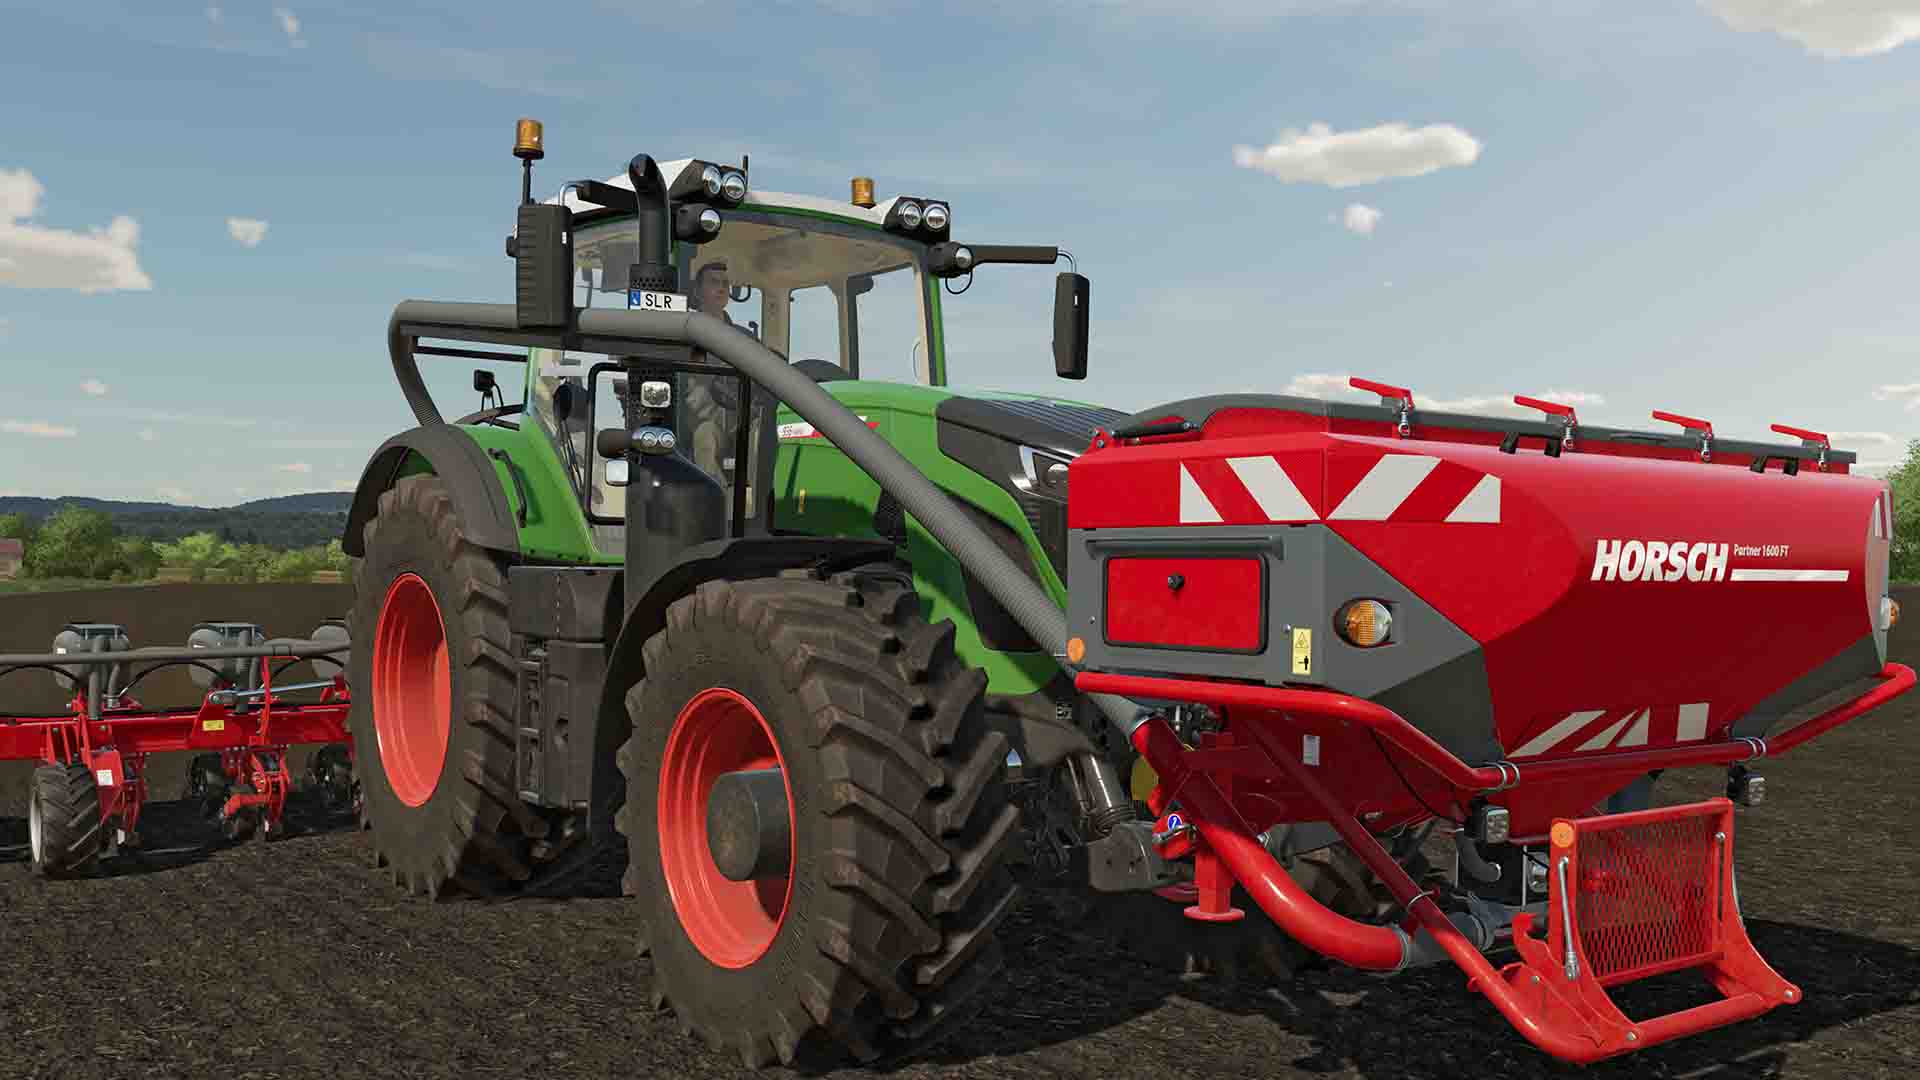 Farming Simulator 22: Premium Edition & Expansion - Announcement Trailer 